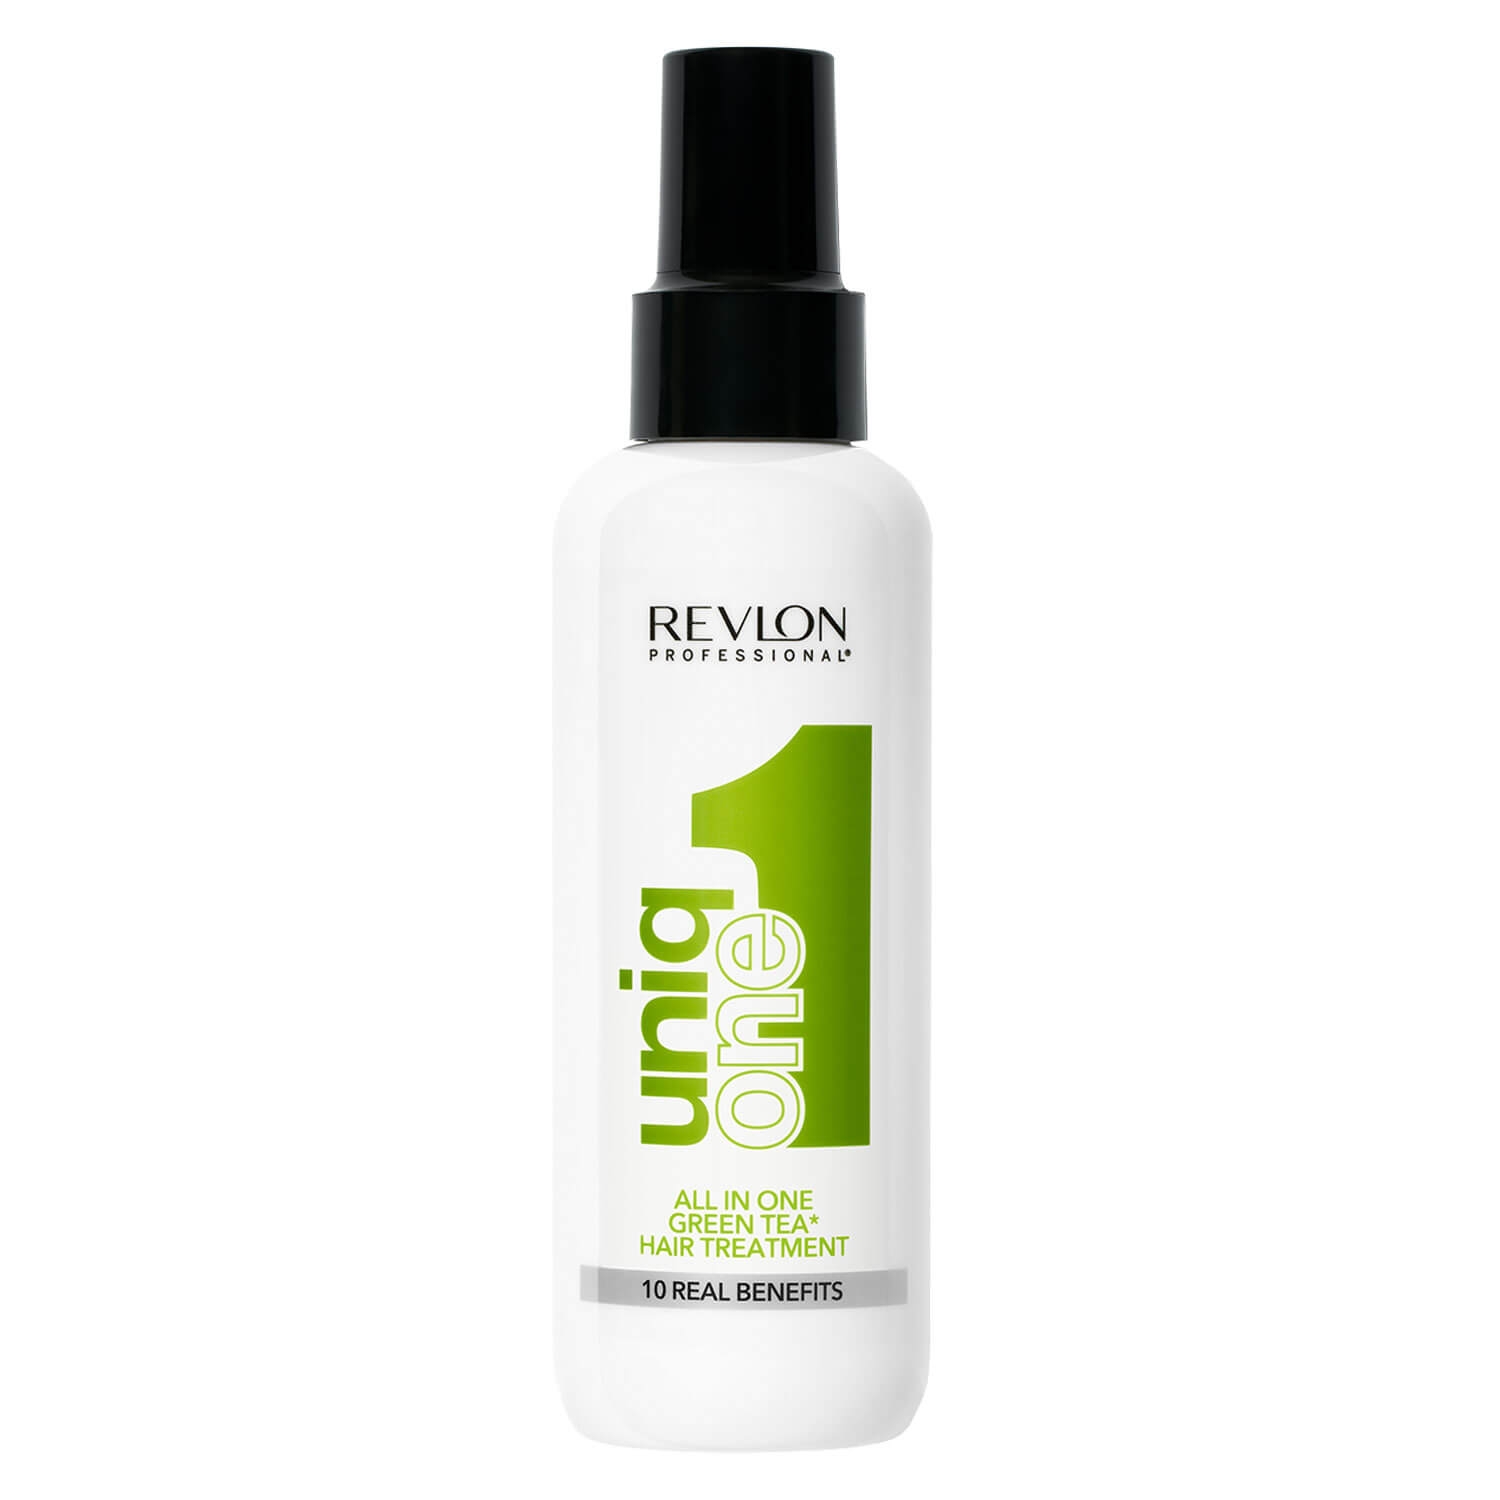 Produktbild von uniq one - All in one Hair Treatment Green Tea